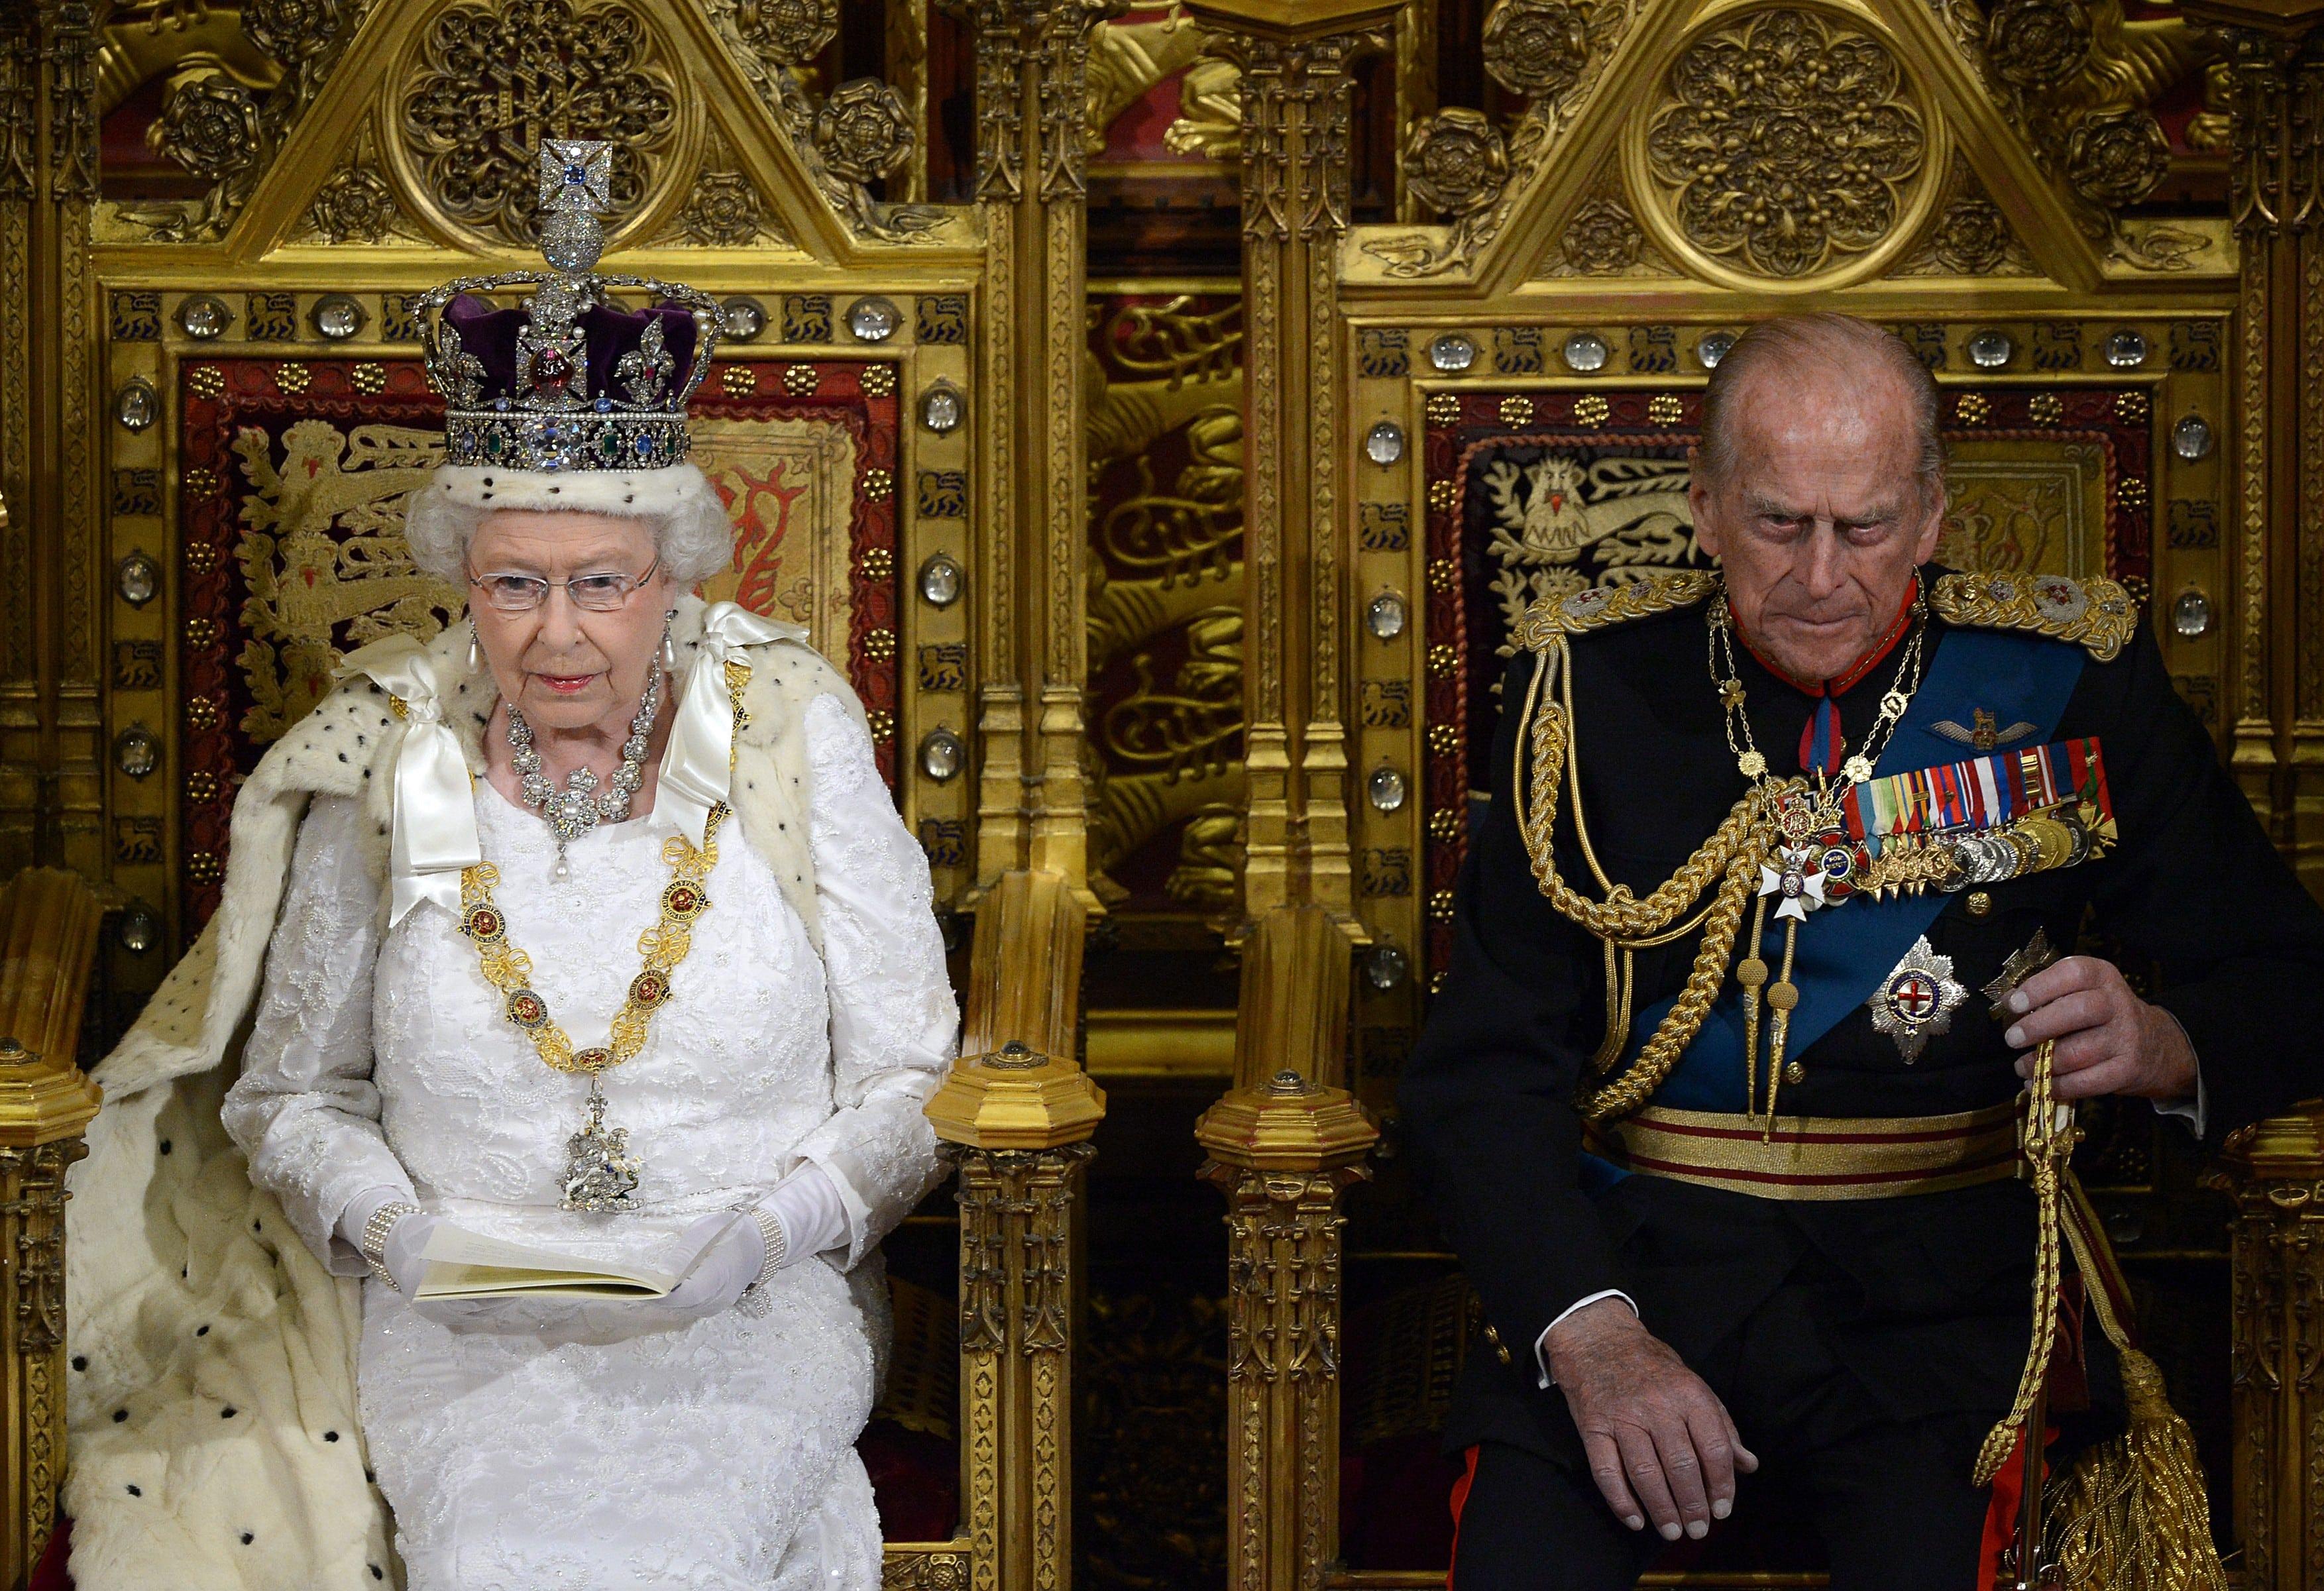 regina angliei pe tron, alaturi de sotul ei